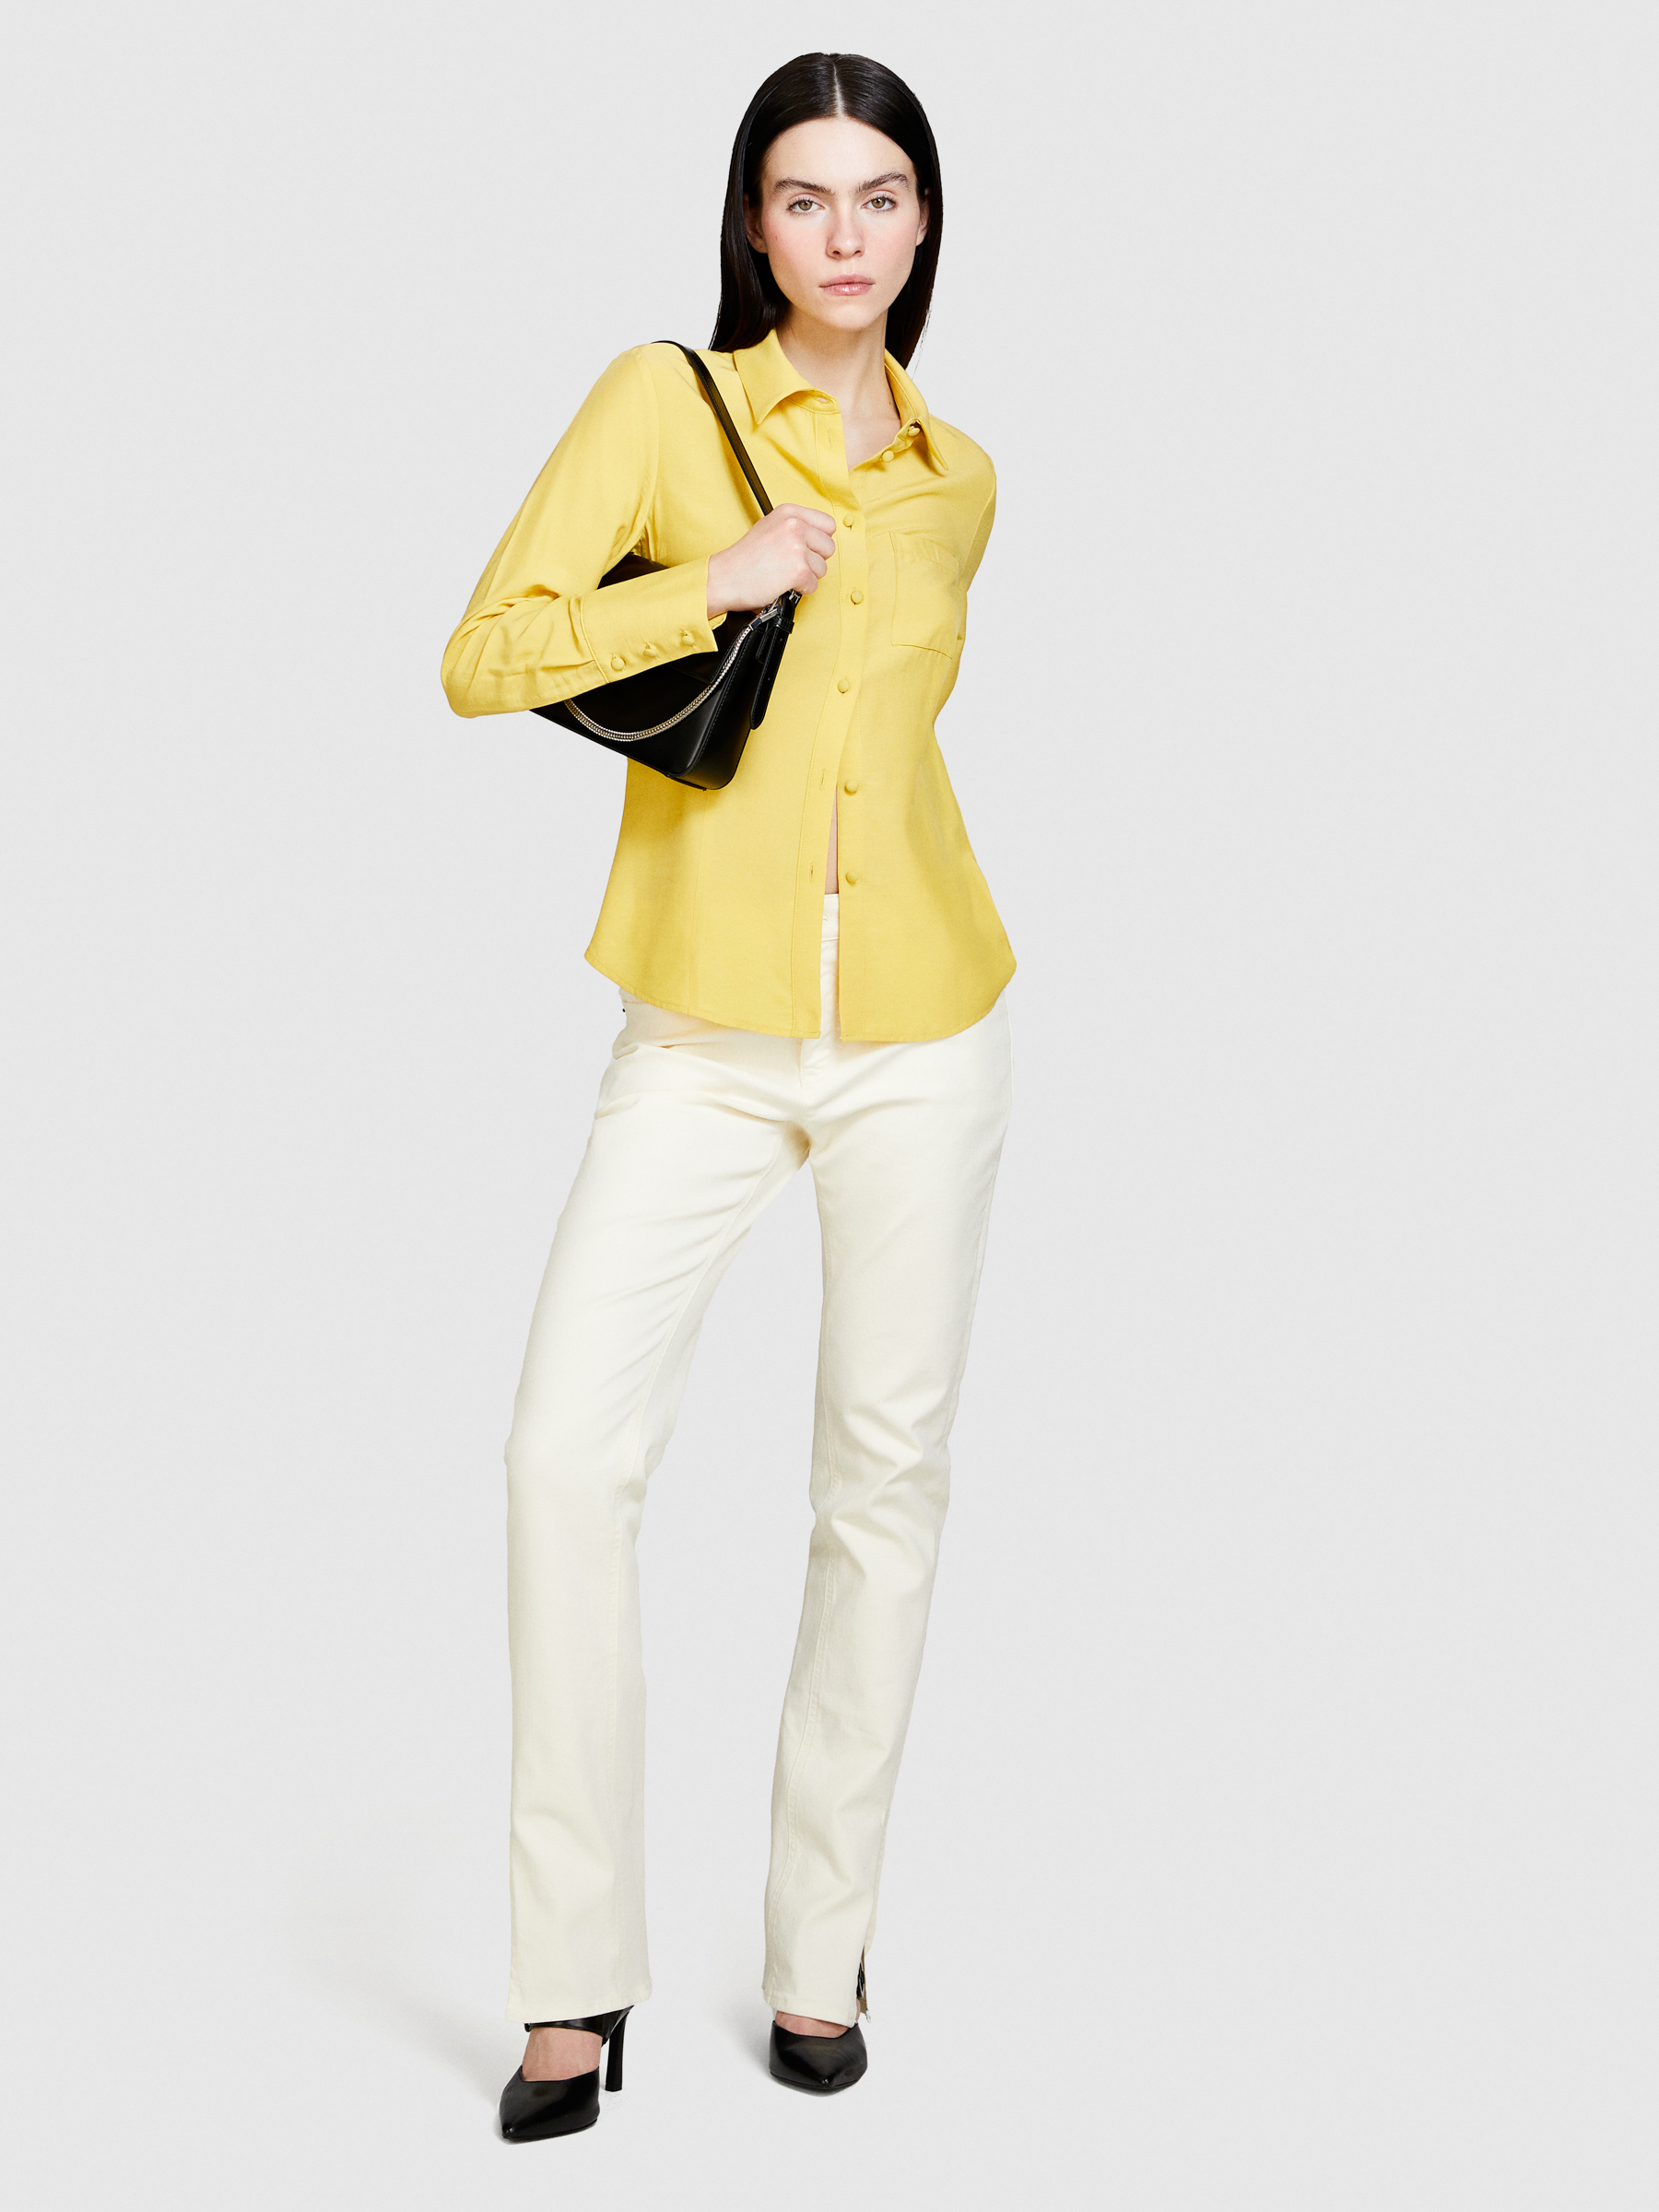 Sisley - Mixed Fabric Shirt, Woman, Yellow, Size: M